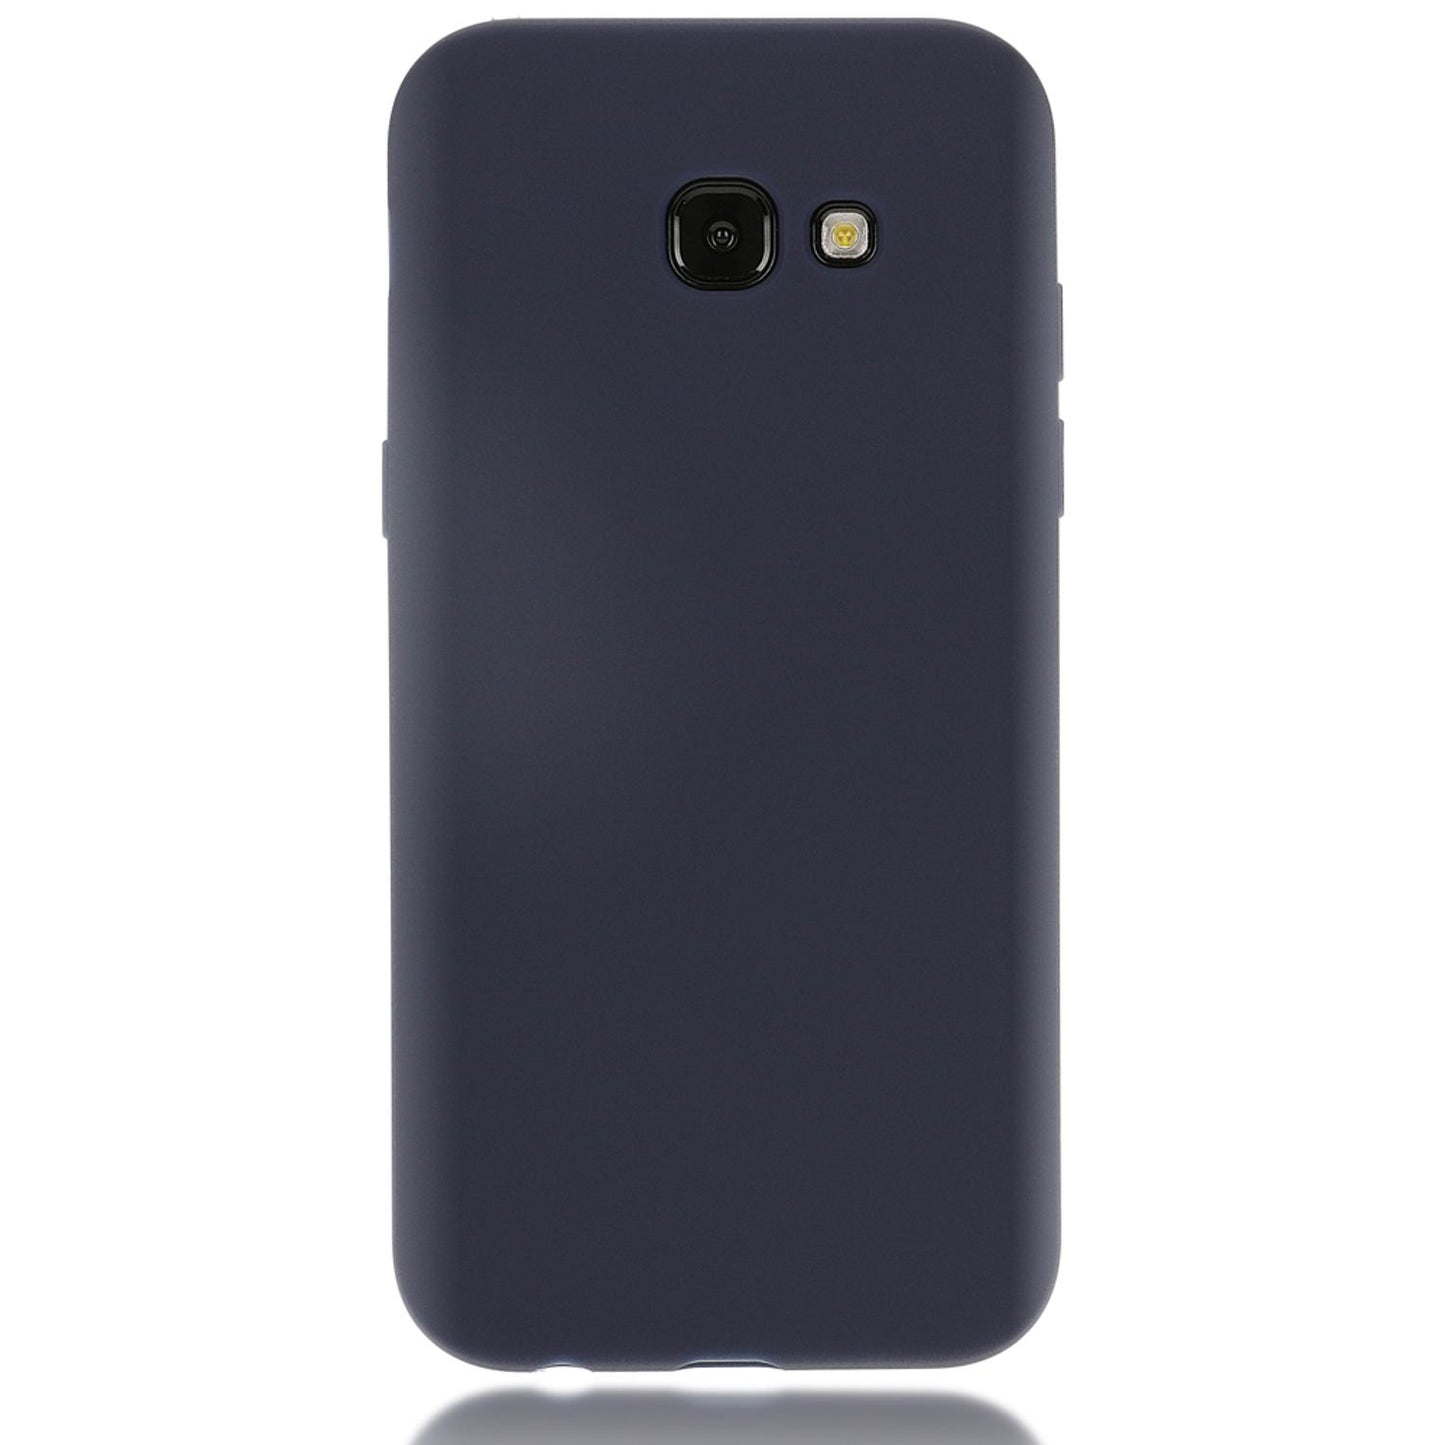 Samsung Galaxy A3 2017 Handy Hülle von NALIA, Silikon Case Cover Schutz Tasche